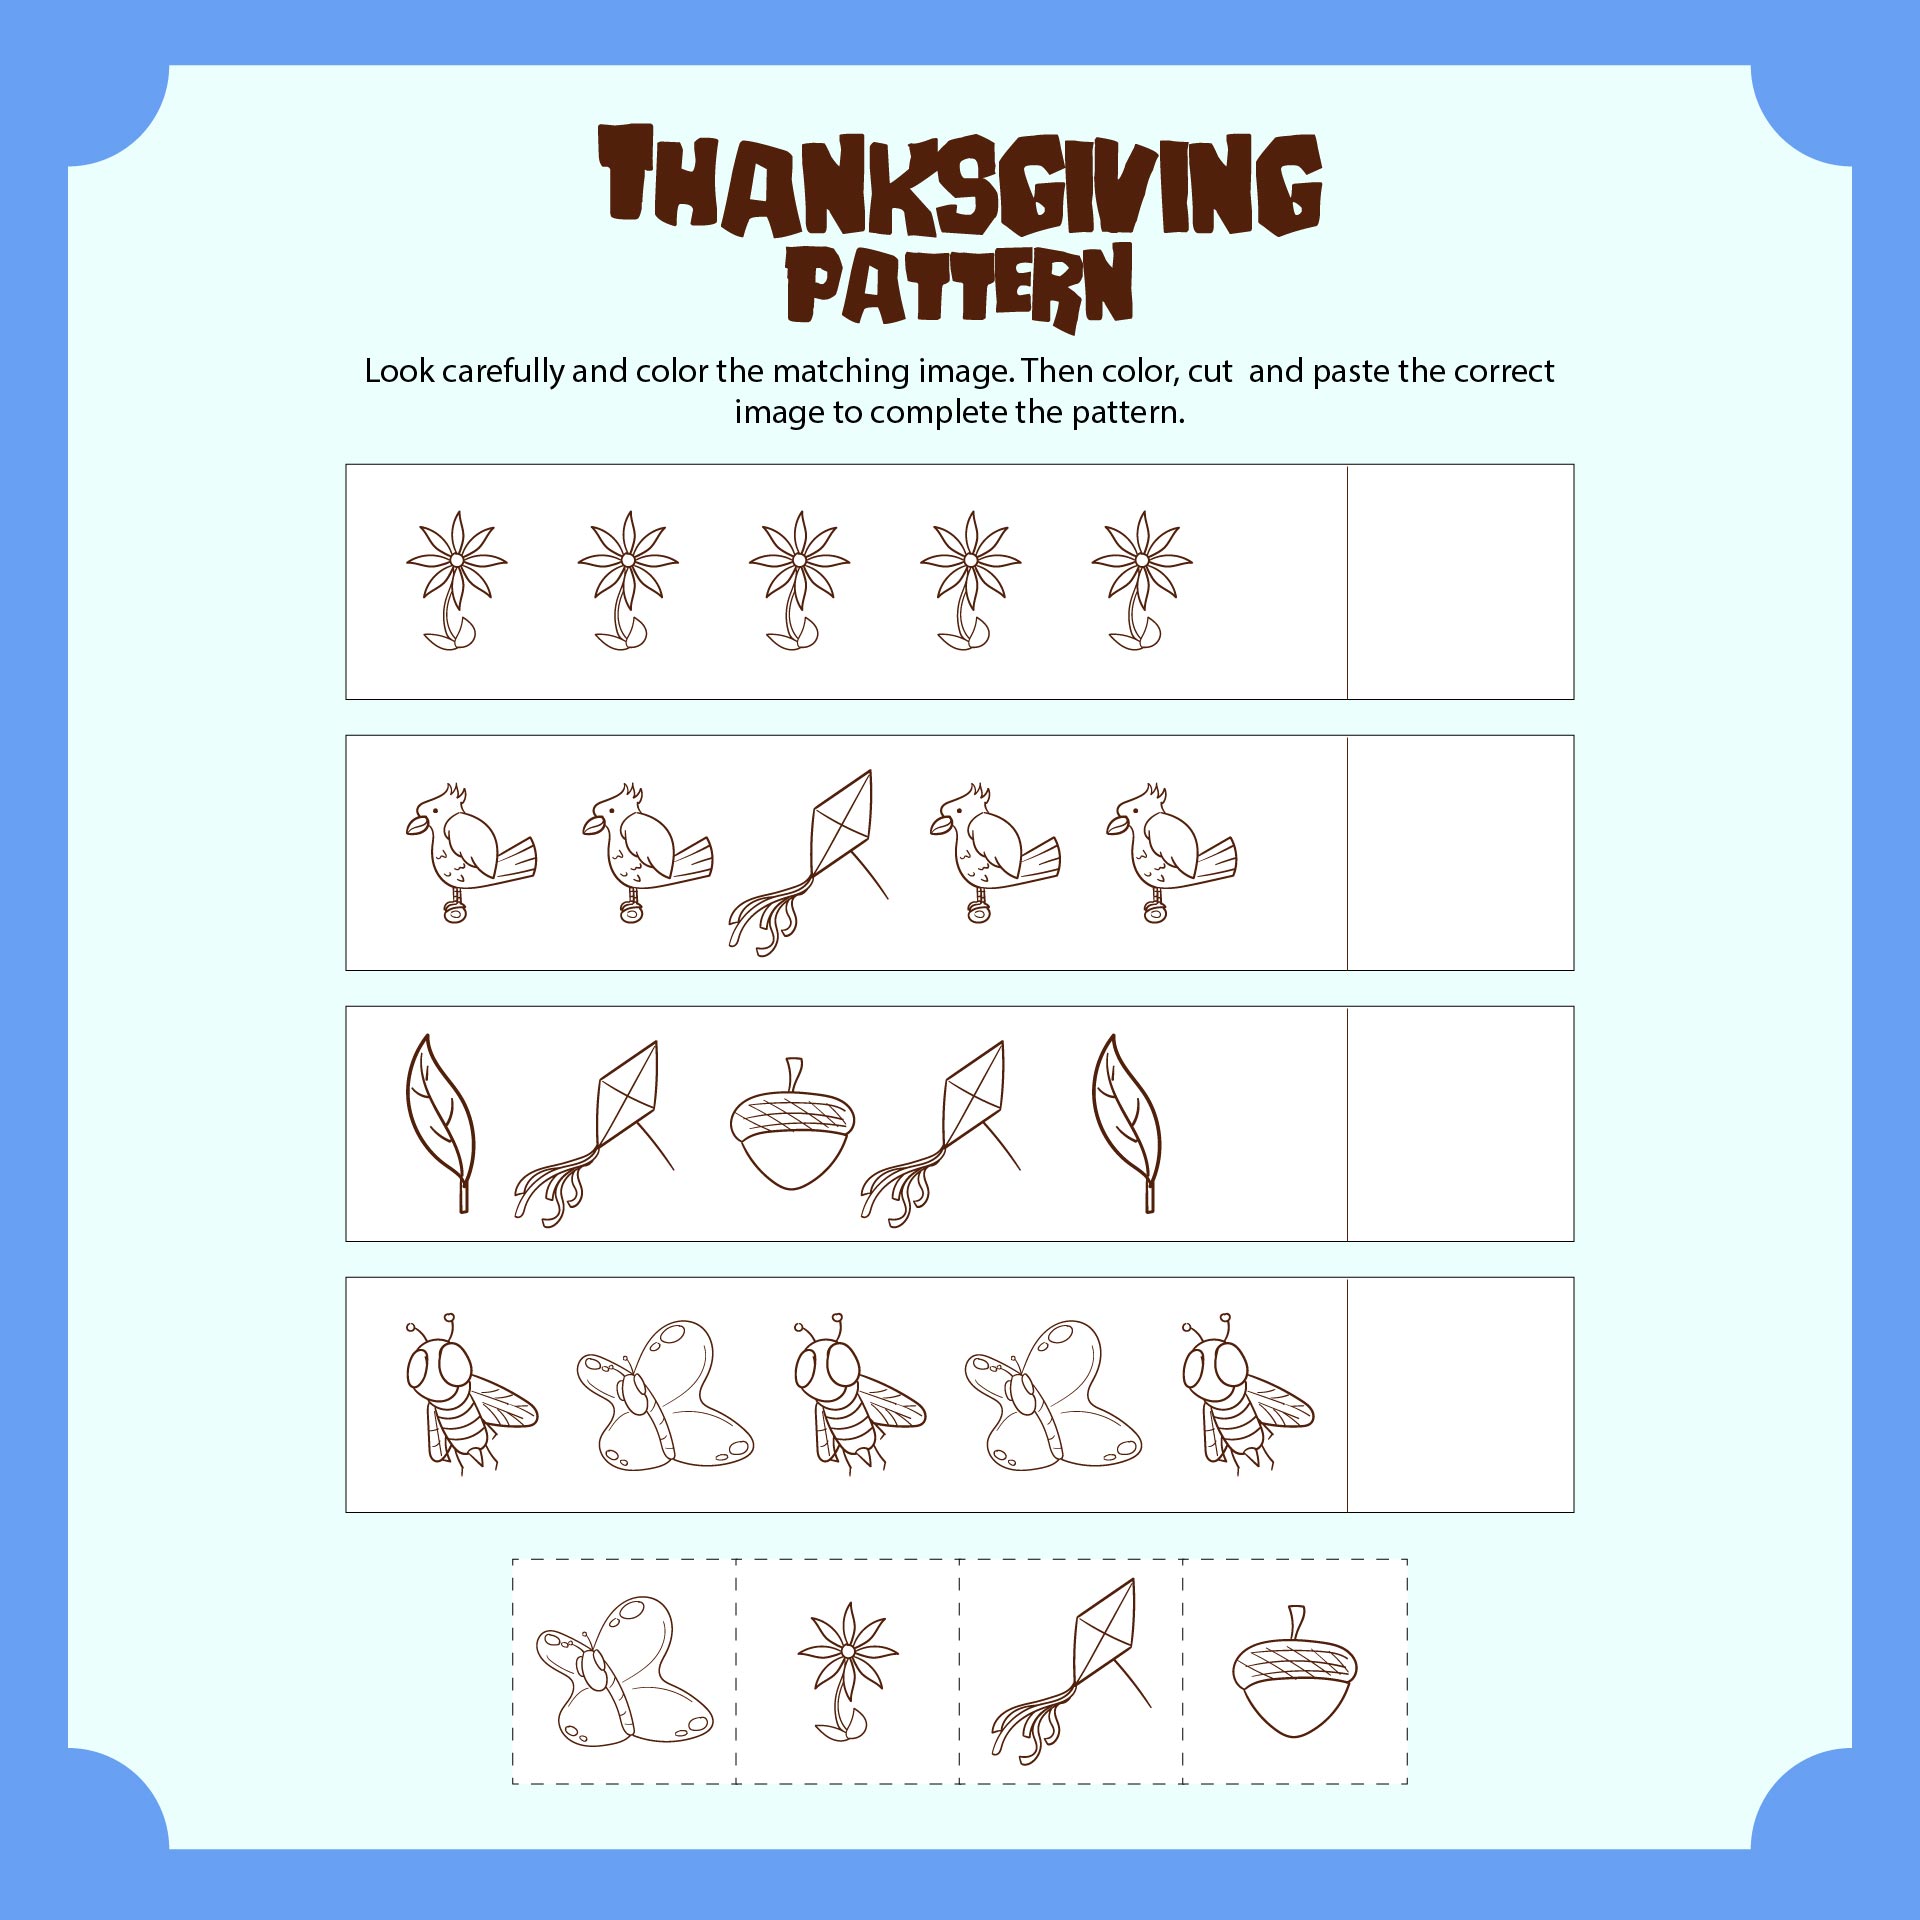 Making Patterns Thanksgiving Style Worksheet